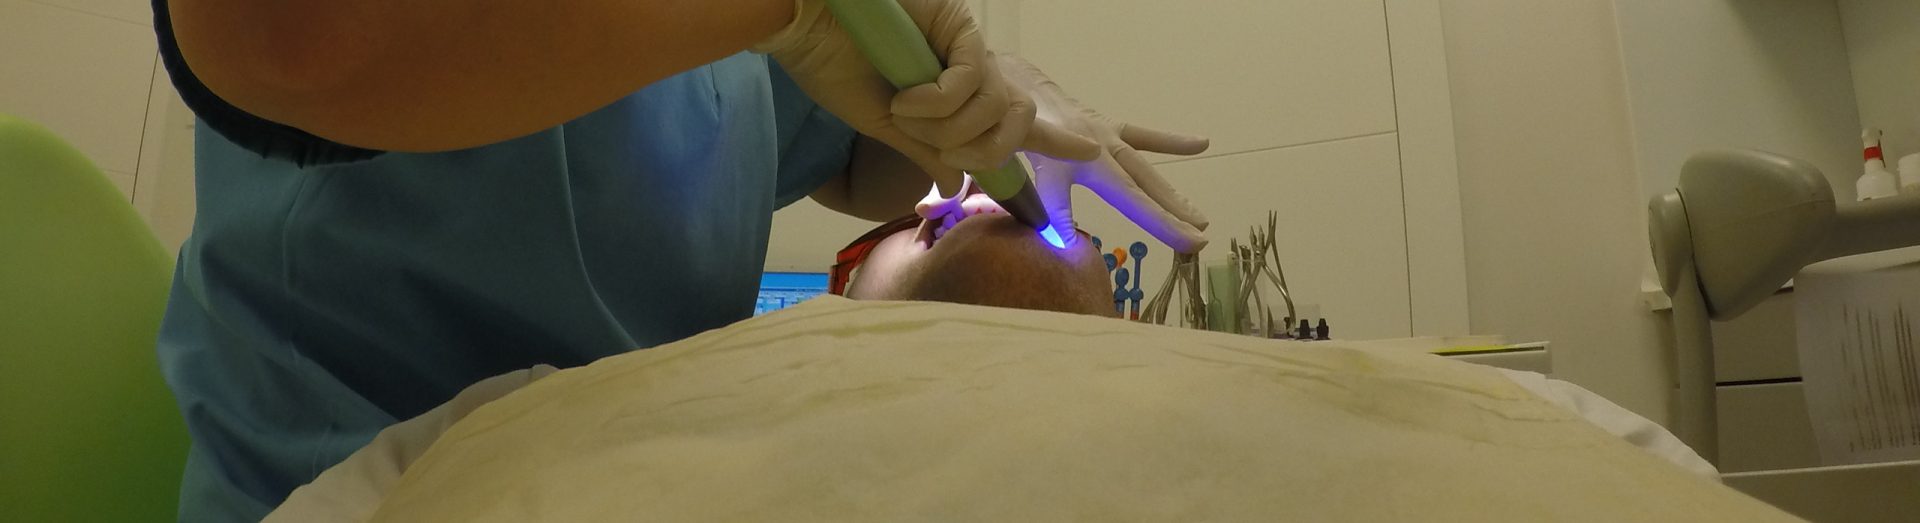 zakladanie aparatu ortodontycznego ultrafiolet zadrutowani